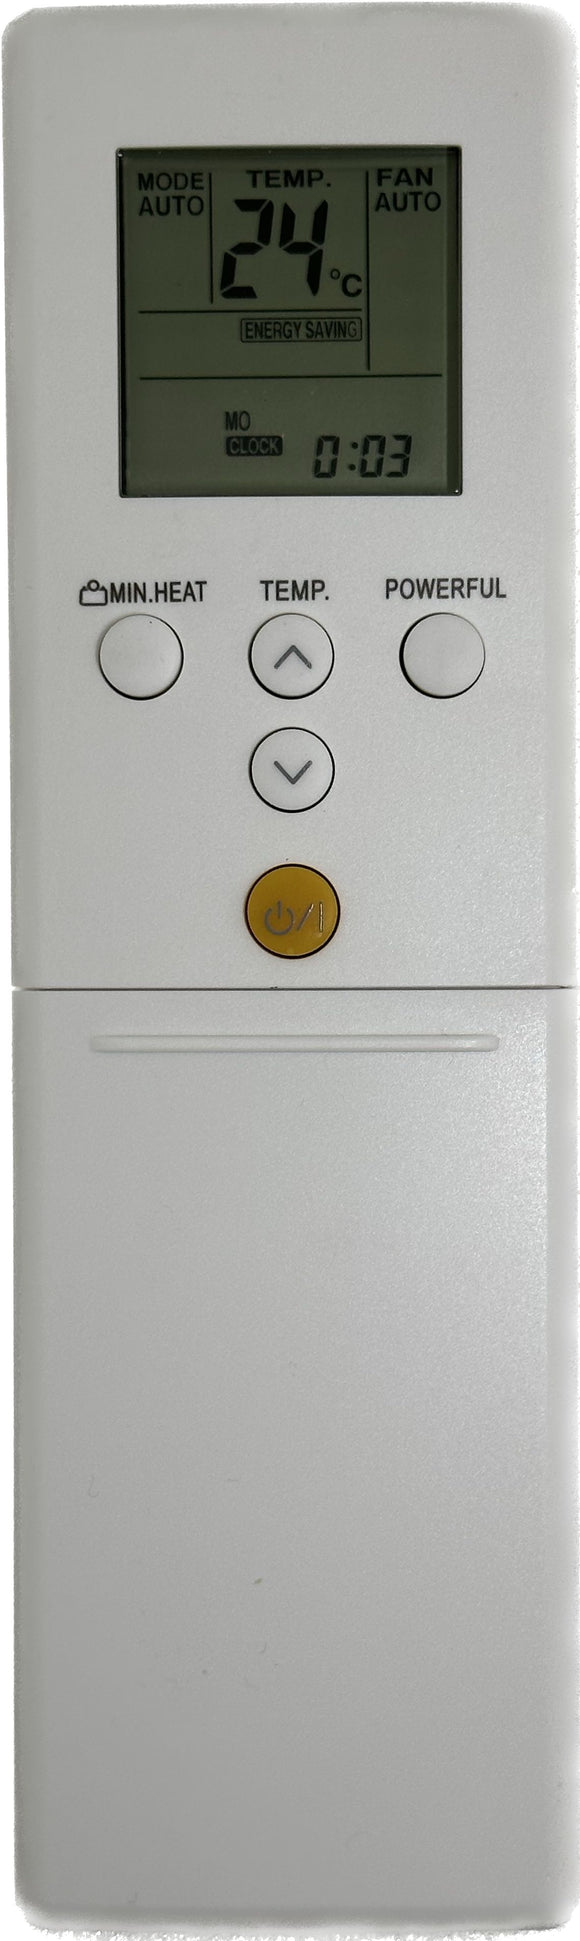 Replacement Fujitsu Air Conditioner Remote Control AR-REF3E